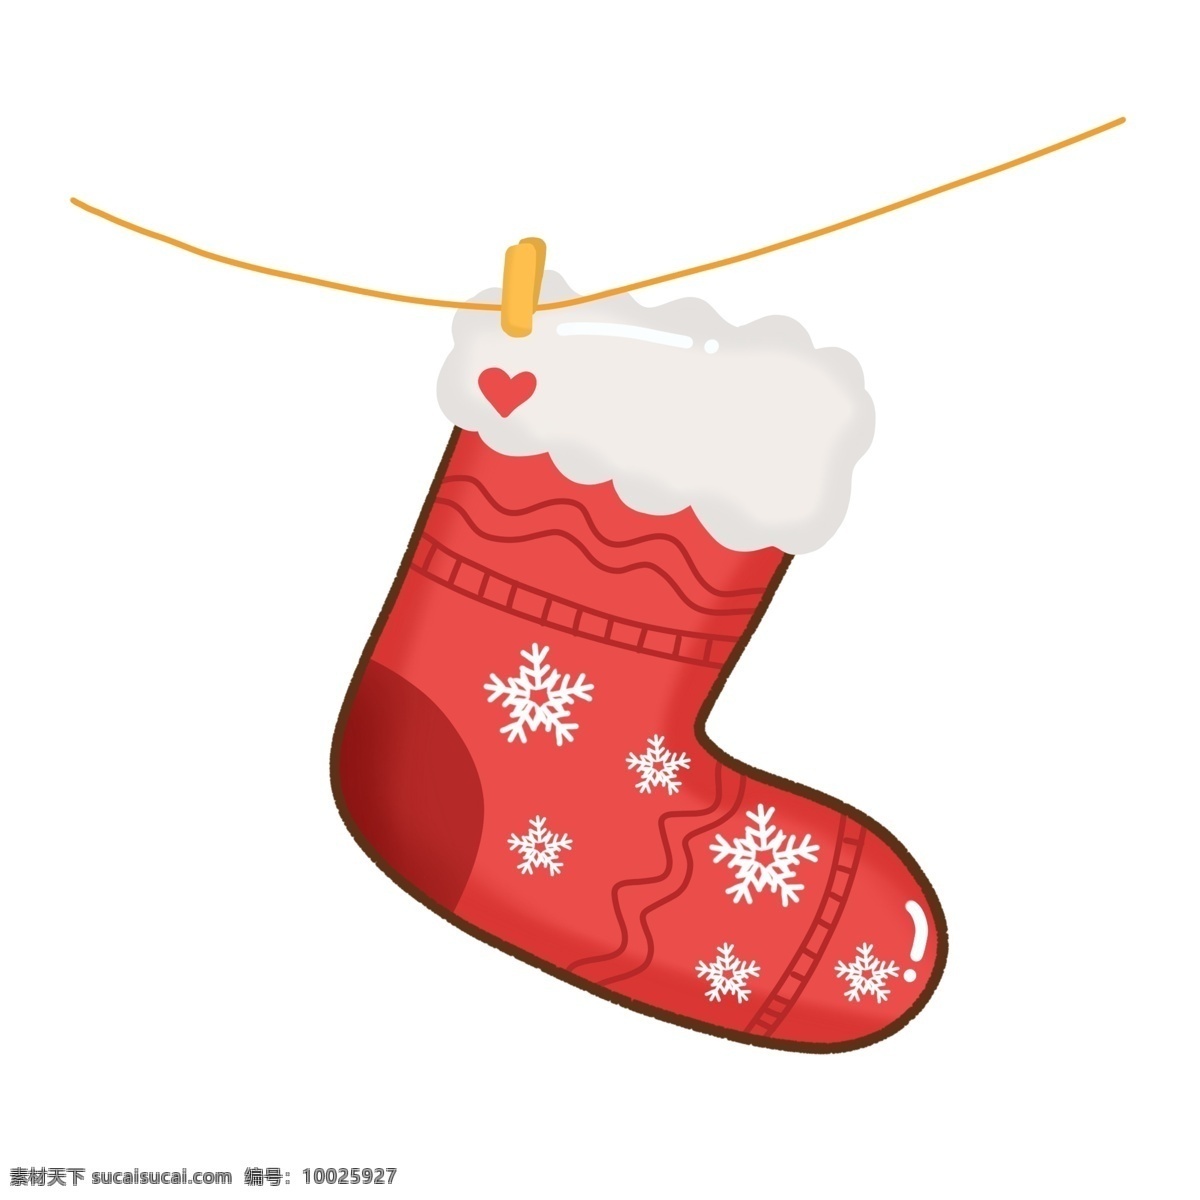 手绘 圣诞节 装饰 可爱 圣诞 袜 元素 袜子 圣诞装饰 雪花 爱心 圣诞袜 圣诞节袜子 可爱袜子 圣诞鹿 圣诞节装饰 漂浮雪花